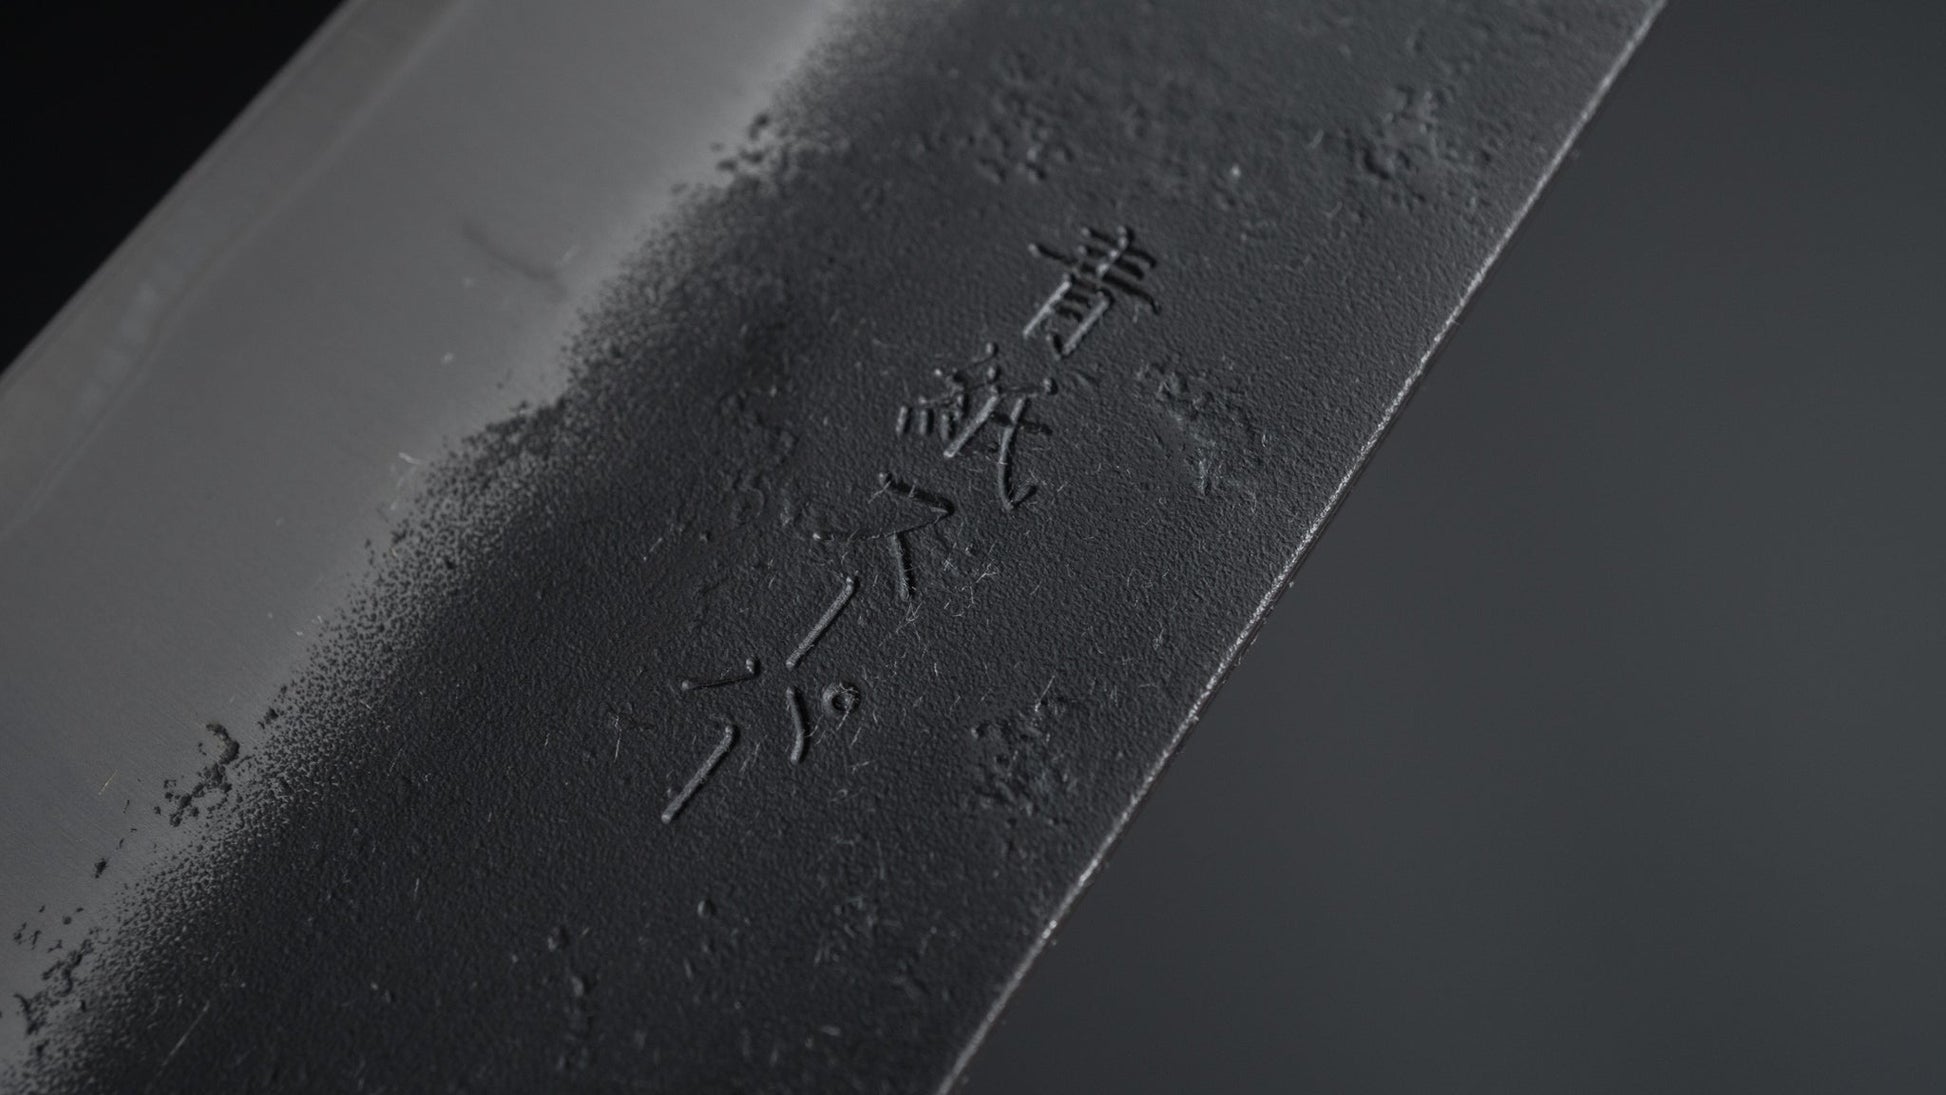 Hitohira Futana SB Kuro Nashiji Kiritsuke Gyuto 210mm Cherry Wood Handle - HITOHIRA